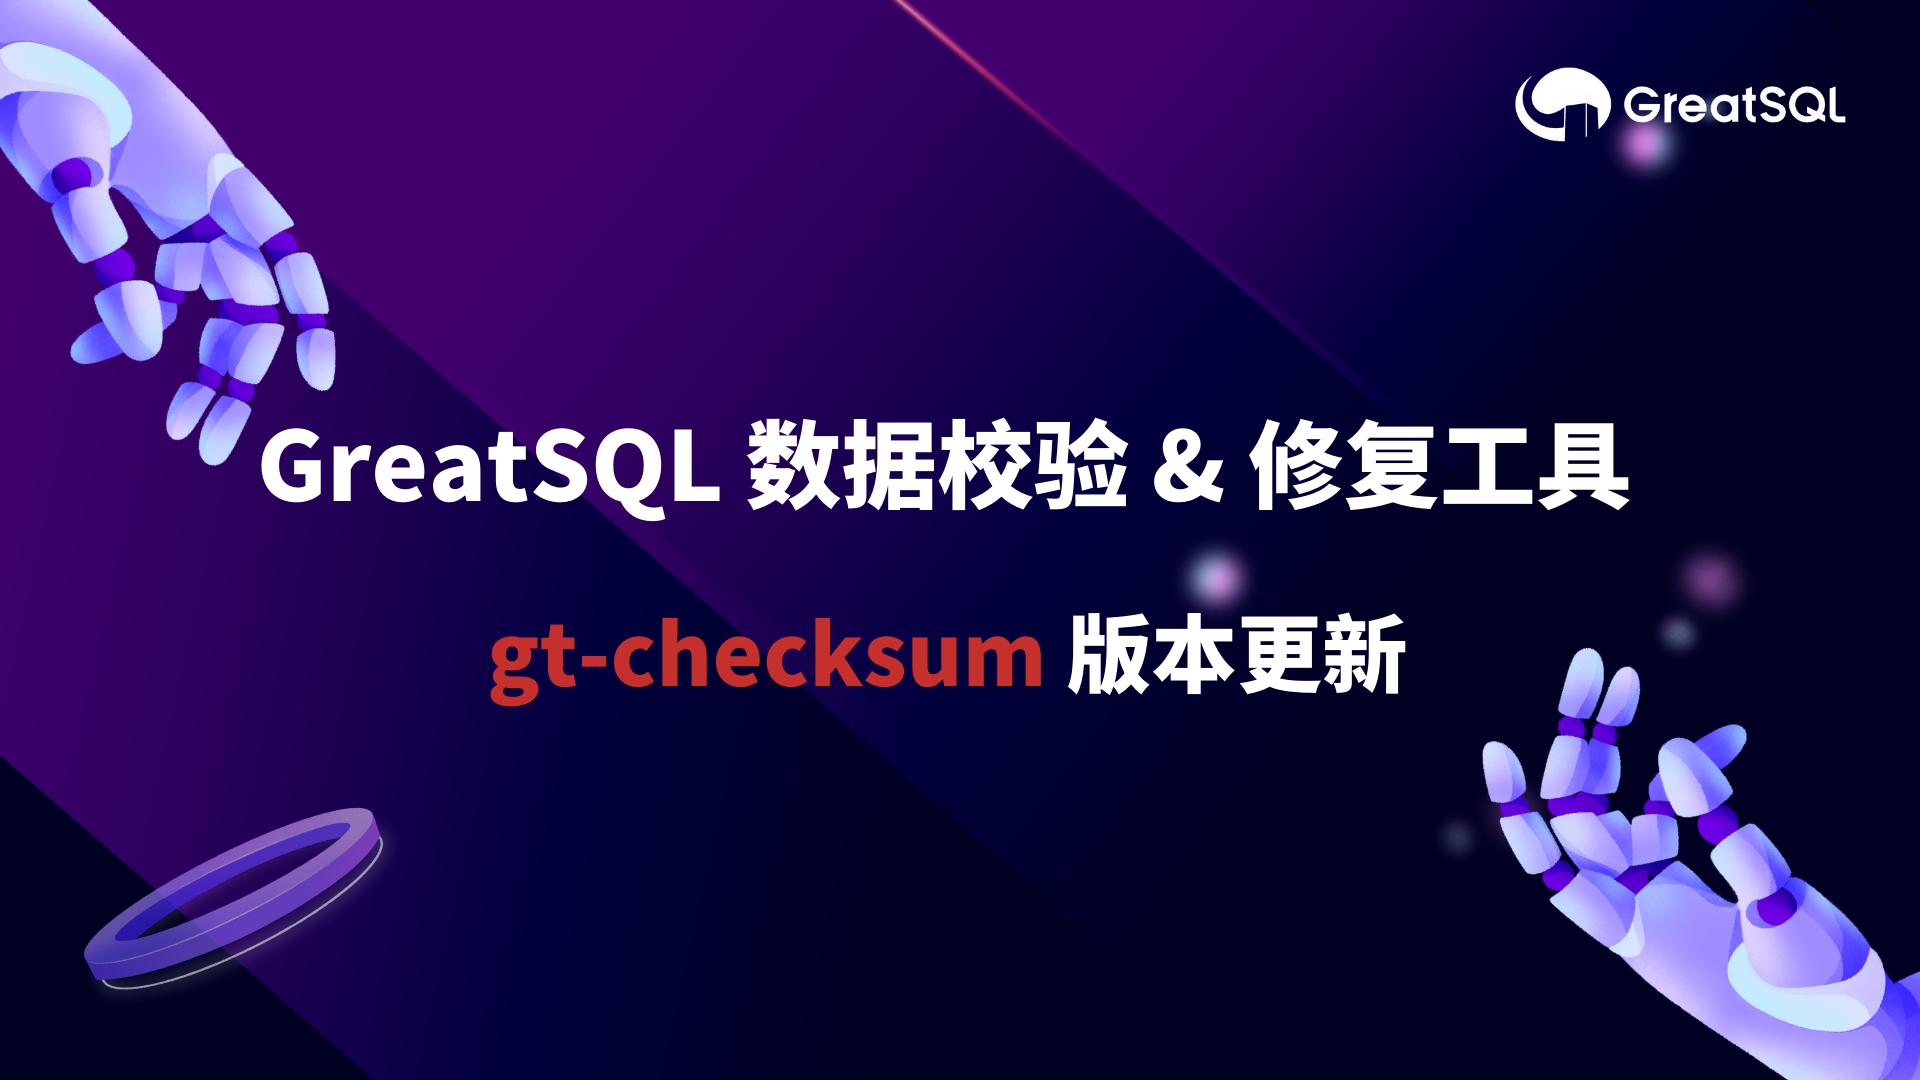 gt-checksum 1.2.1发布，新增表结构校验及修复等超实用特性